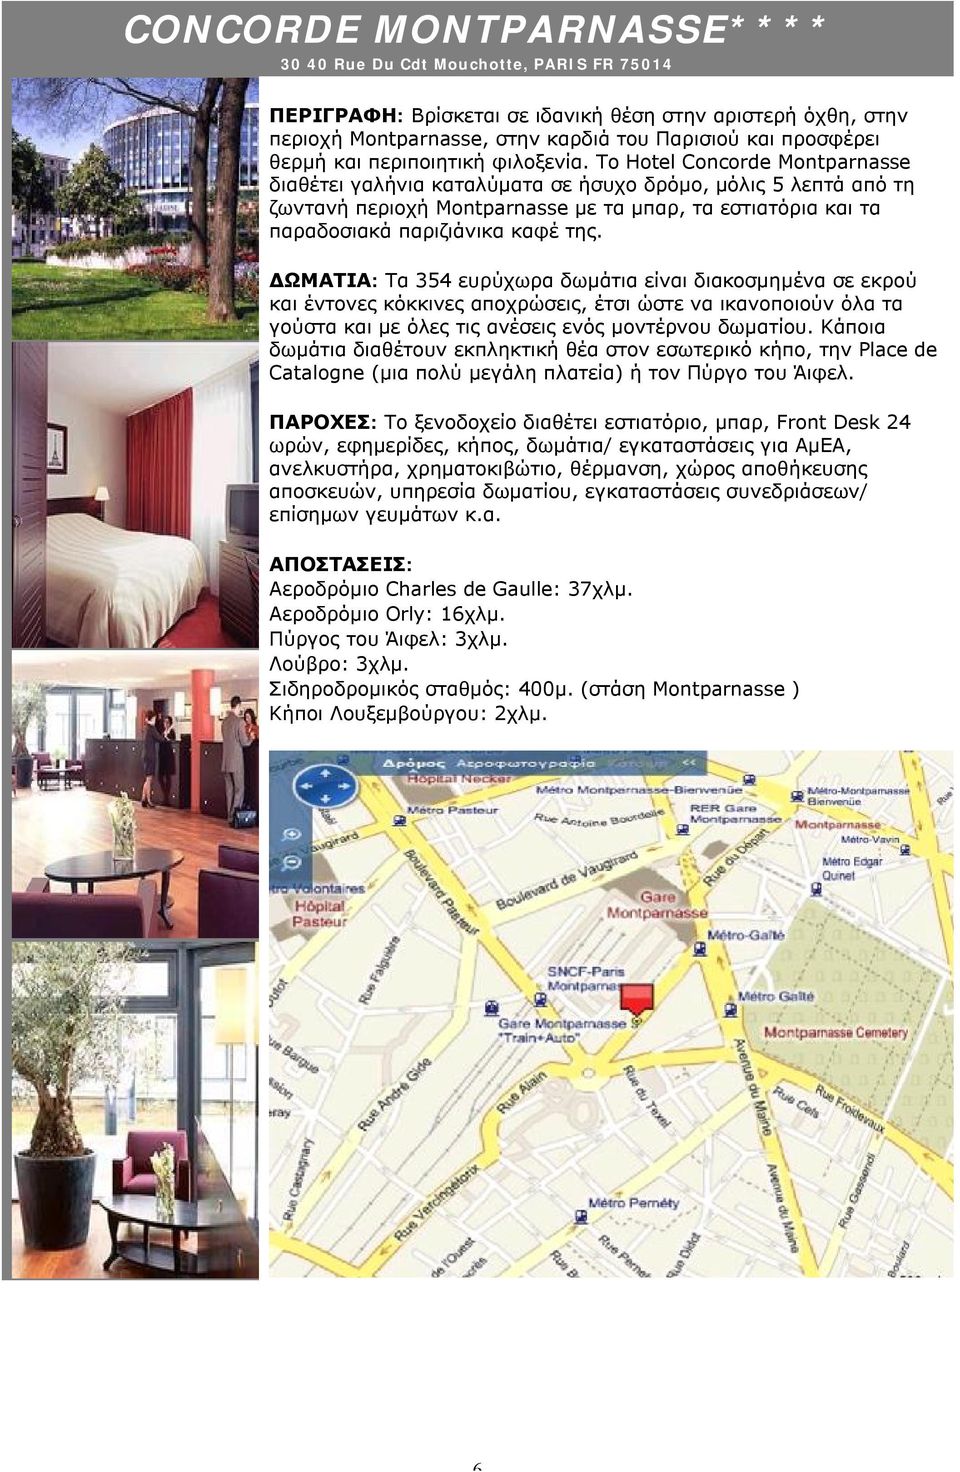 Το Hotel Concorde Montparnasse διαθέτει γαλήνια καταλύματα σε ήσυχο δρόμο, μόλις 5 λεπτά από τη ζωντανή περιοχή Montparnasse με τα μπαρ, τα εστιατόρια και τα παραδοσιακά παριζιάνικα καφέ της.